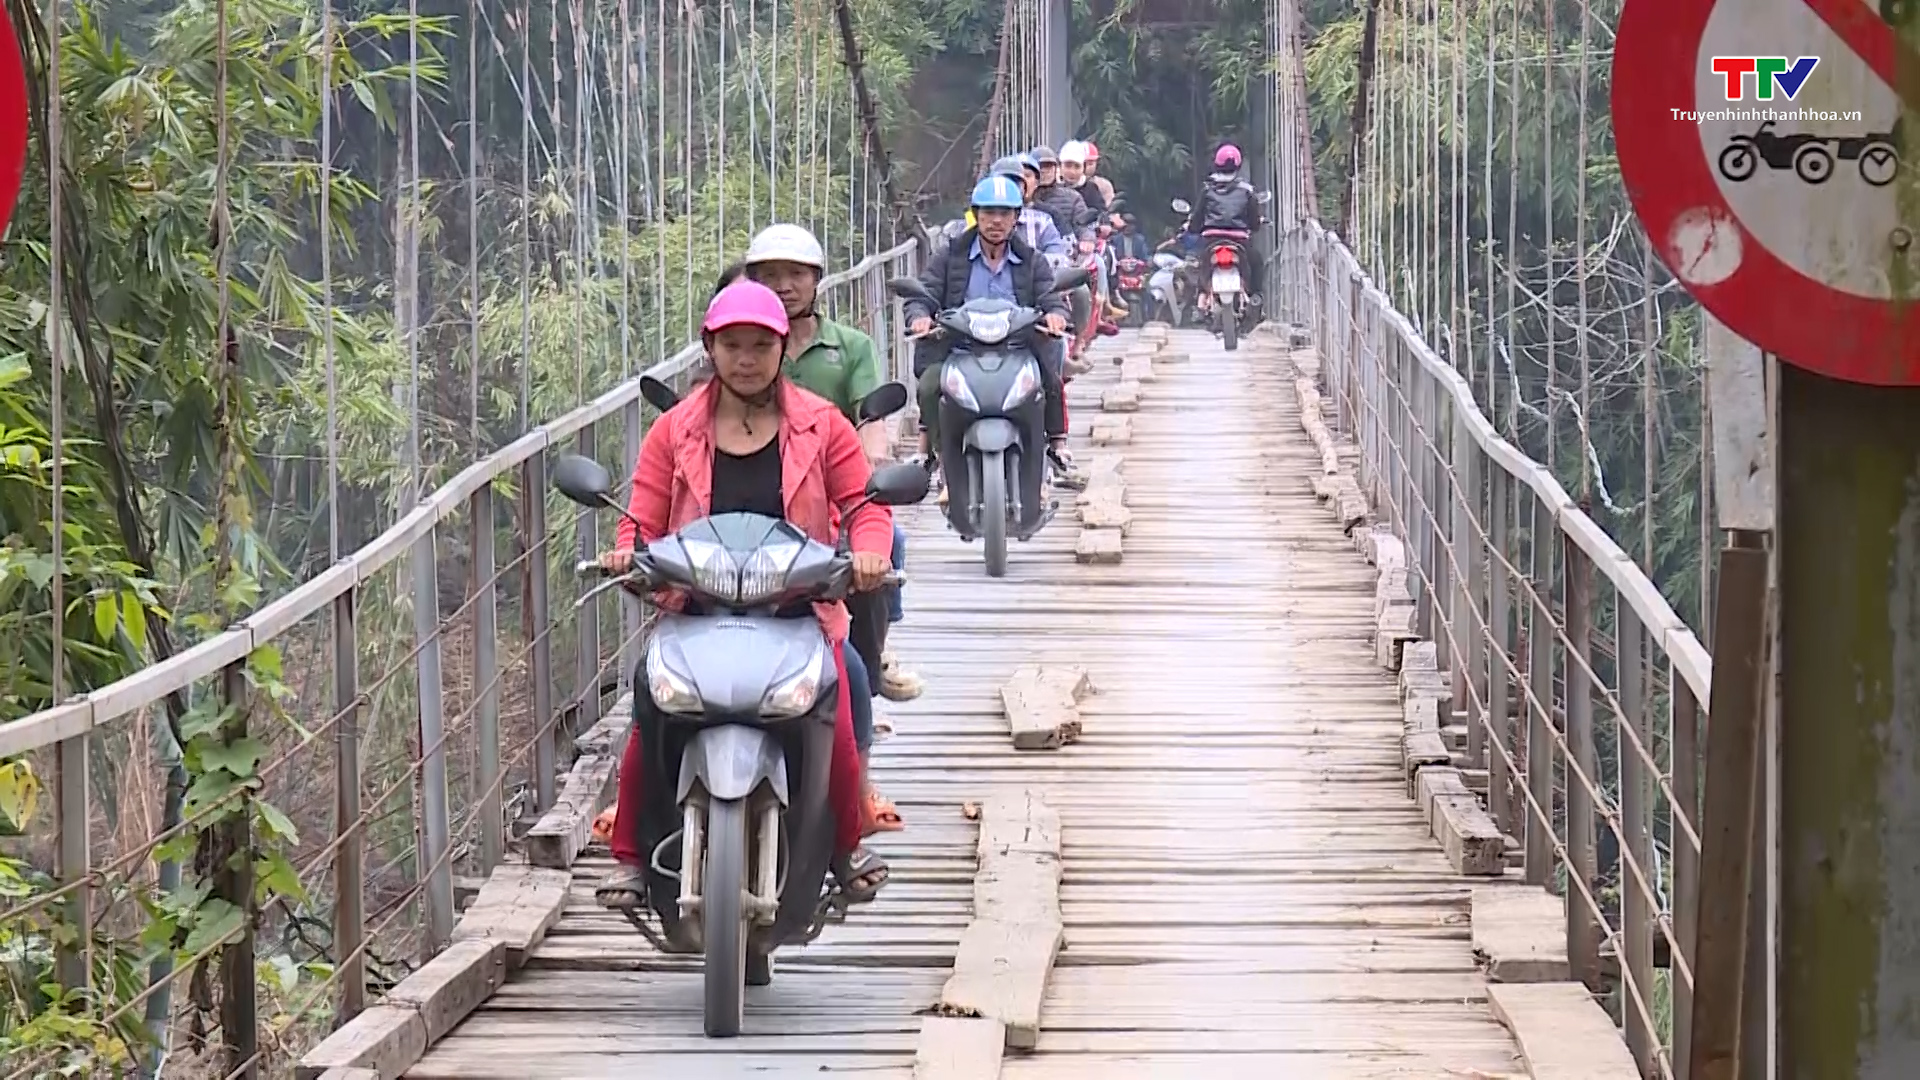 Cầu treo bản Hậu, xã Tam Lư, huyện Quan Sơn xuống cấp nghiêm trọng - Ảnh 4.